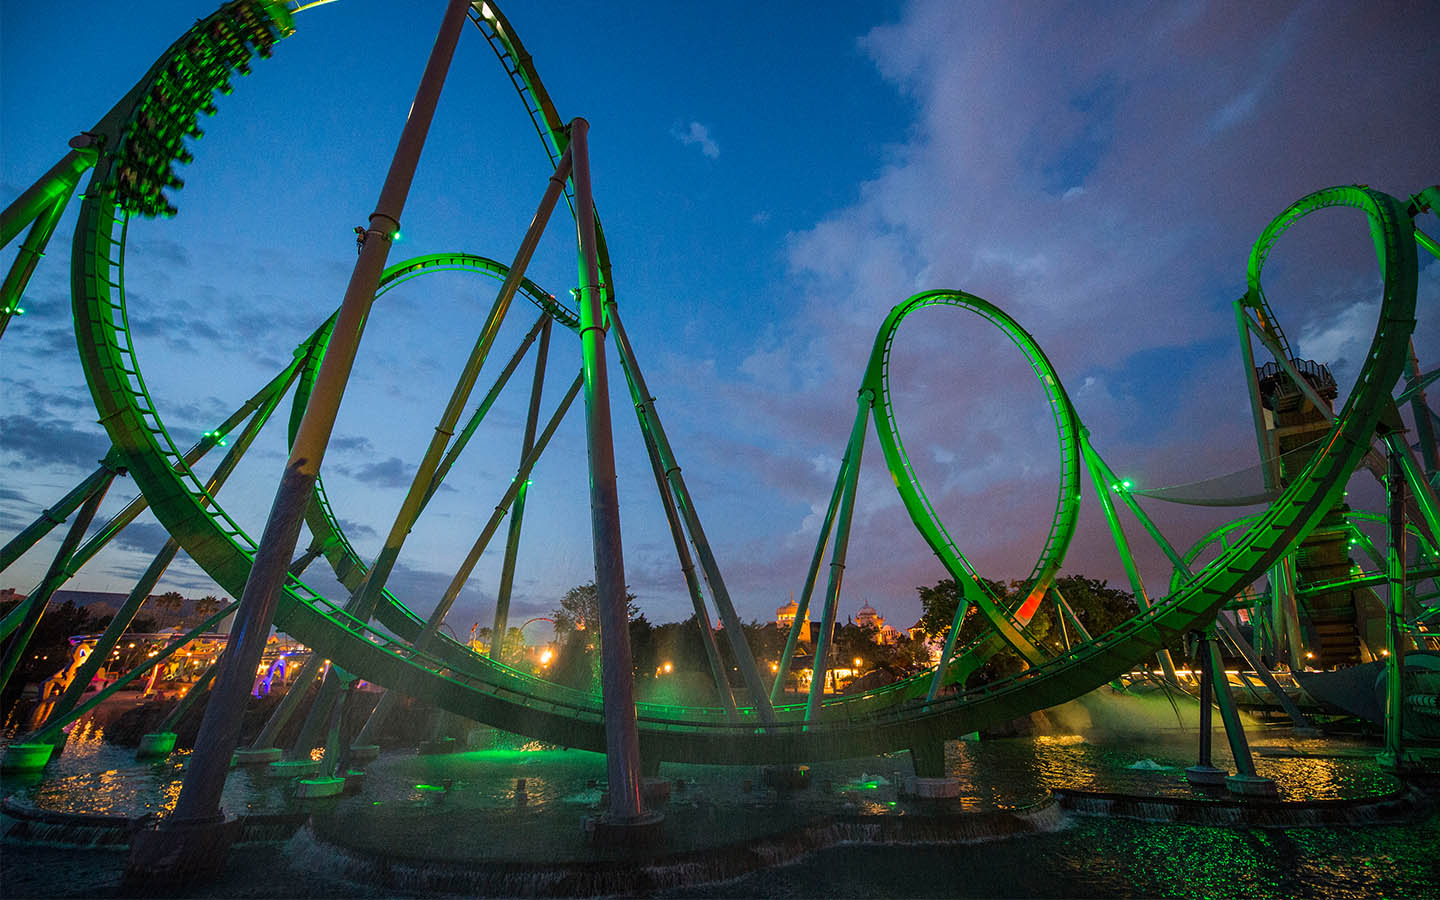 Incredible Hulk Coaster at night